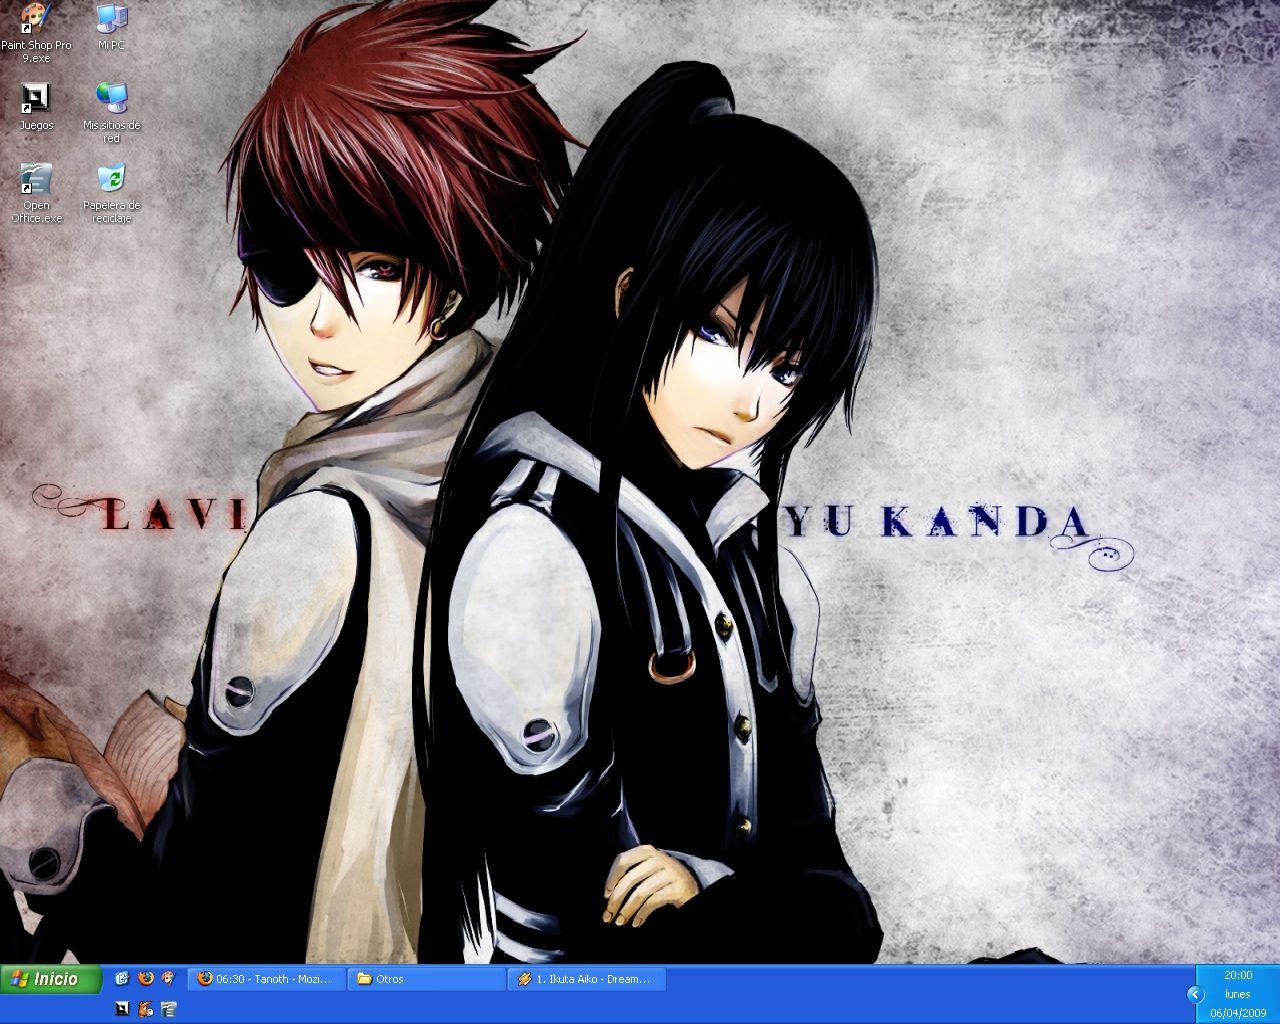 NewDesktop and Yu Kanda